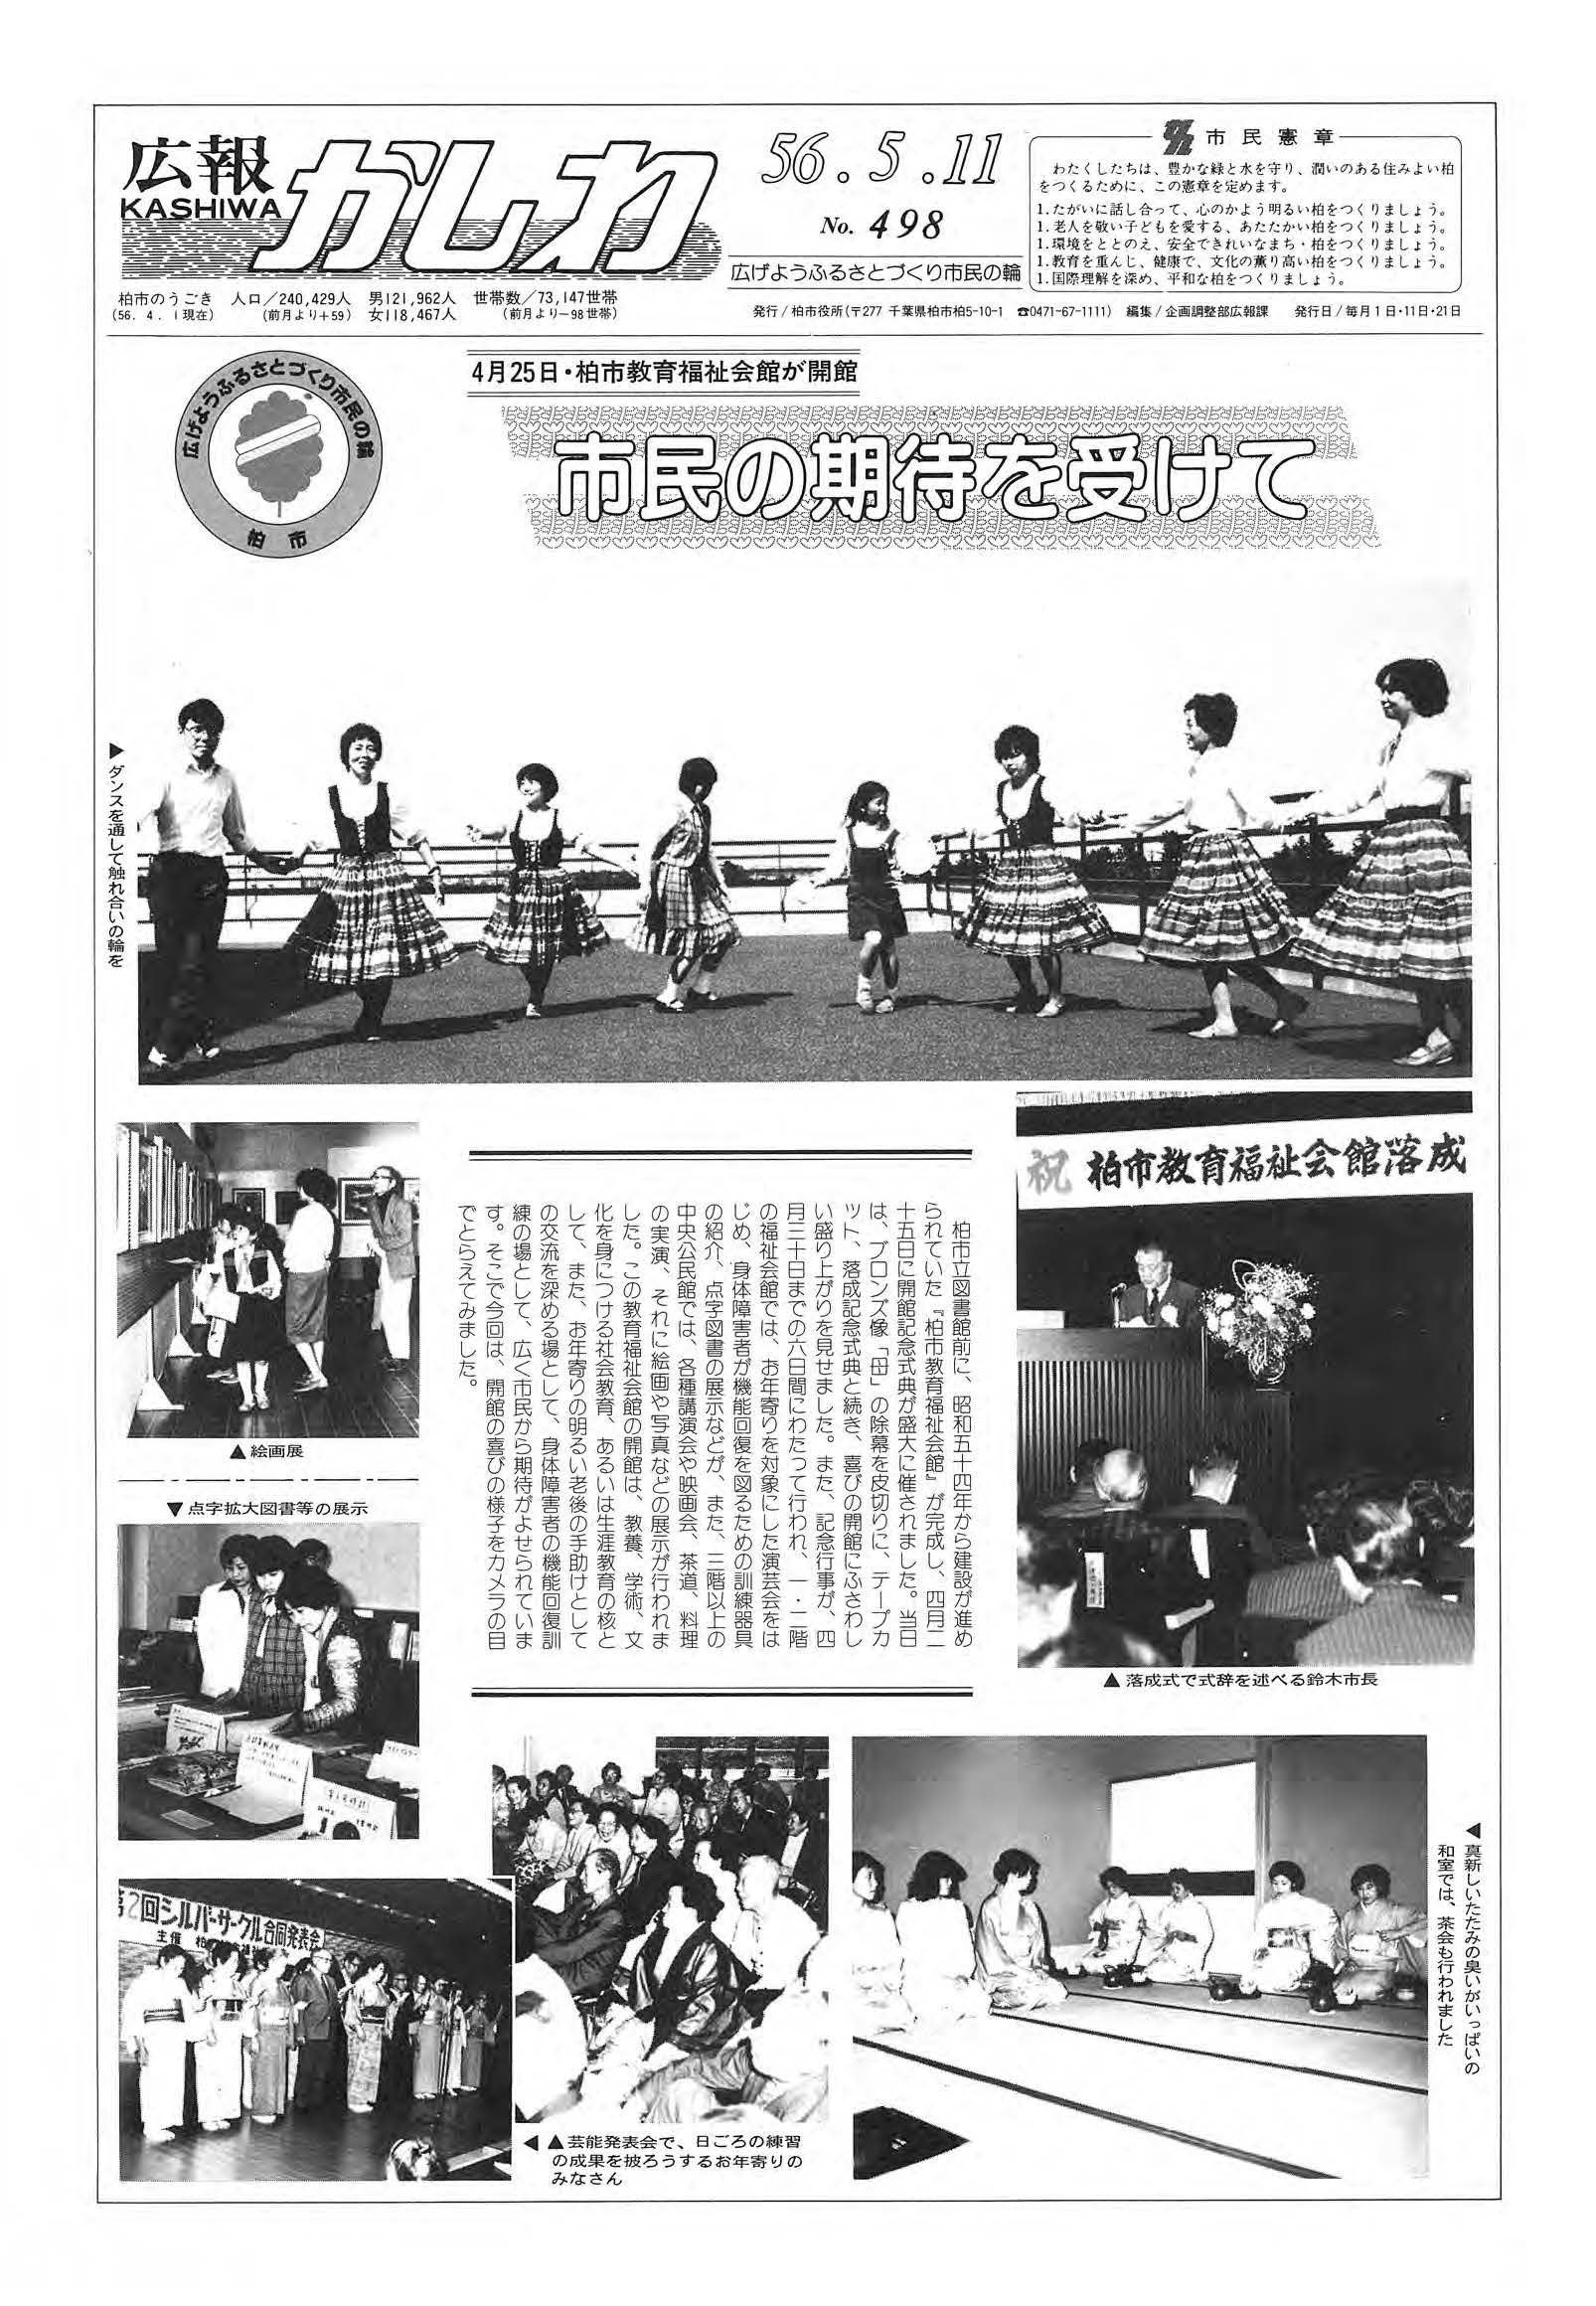 広報かしわ　昭和56年5月11日発行　498号